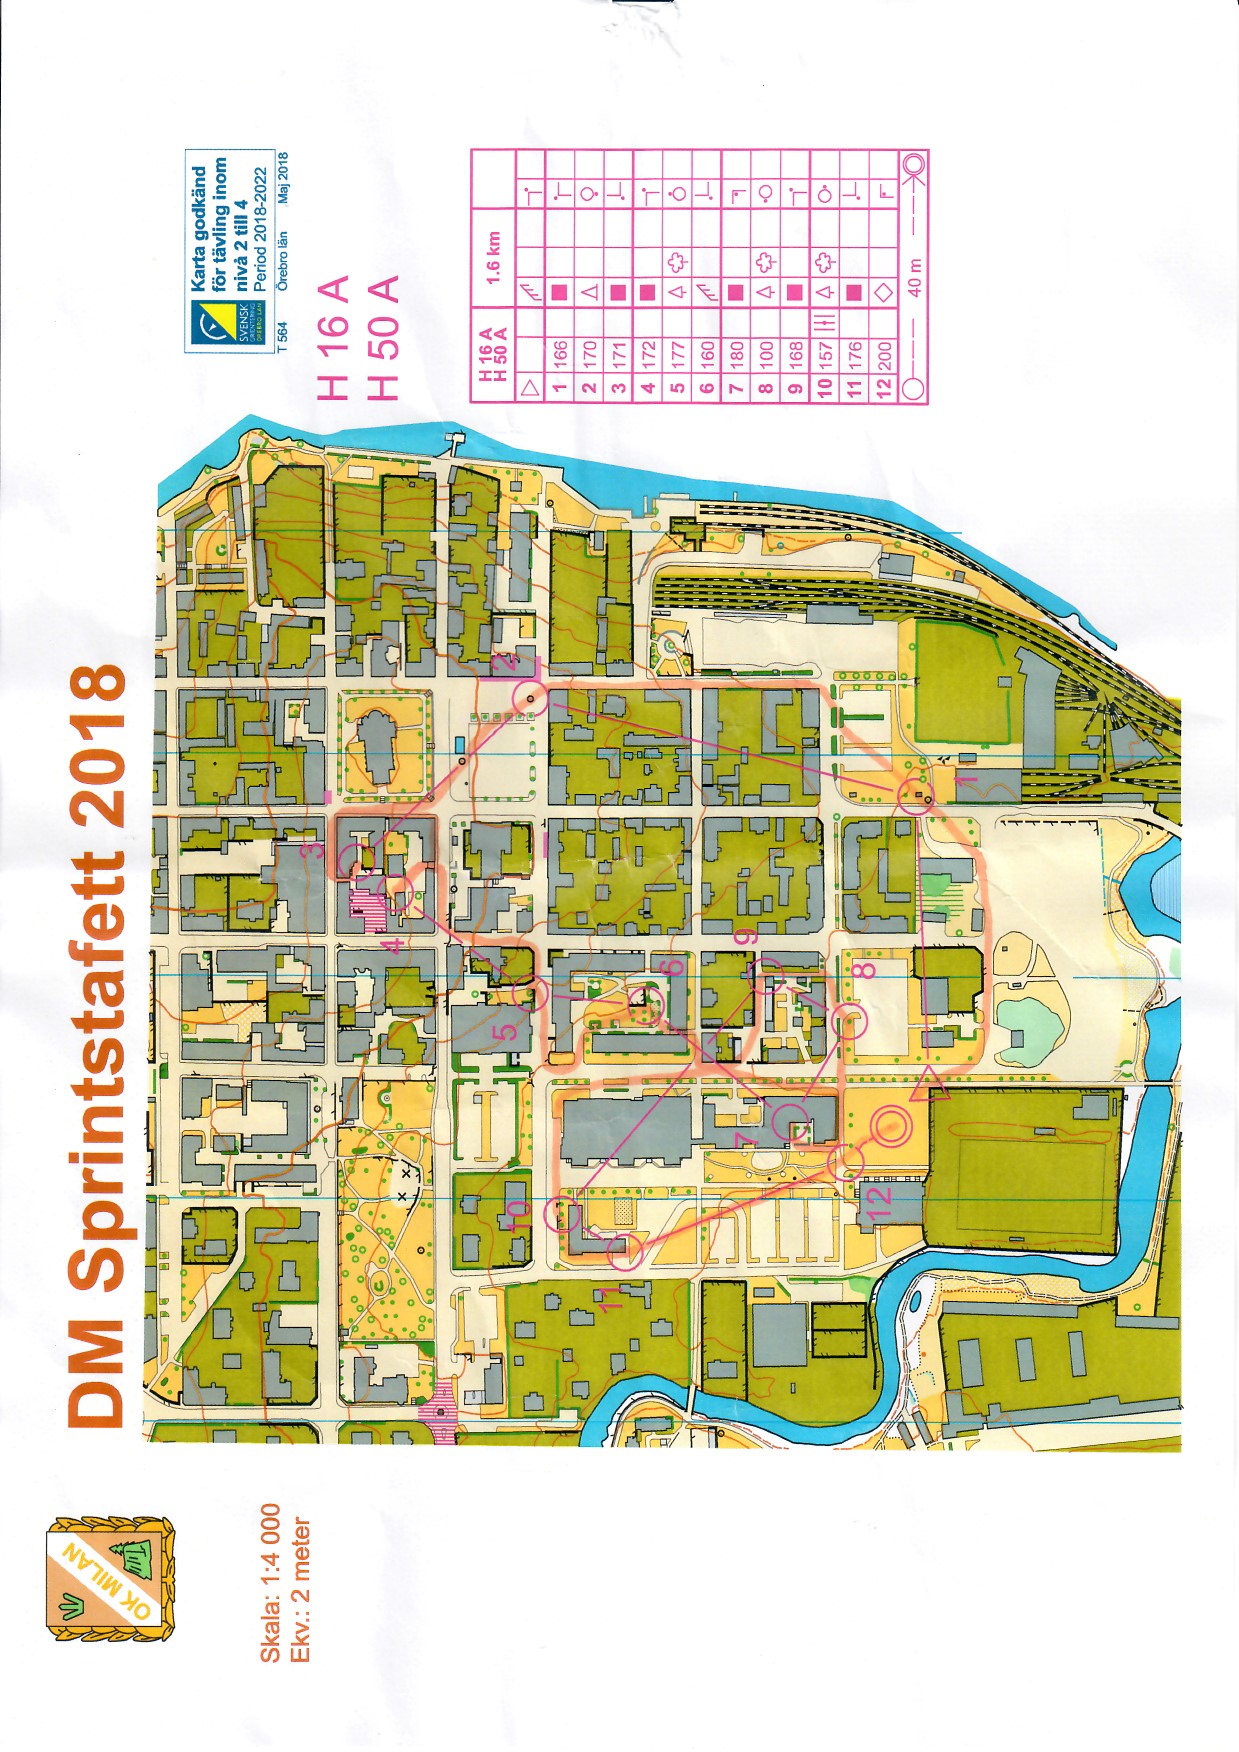 DM Sprintstafett, Örebro (10/06/2018)